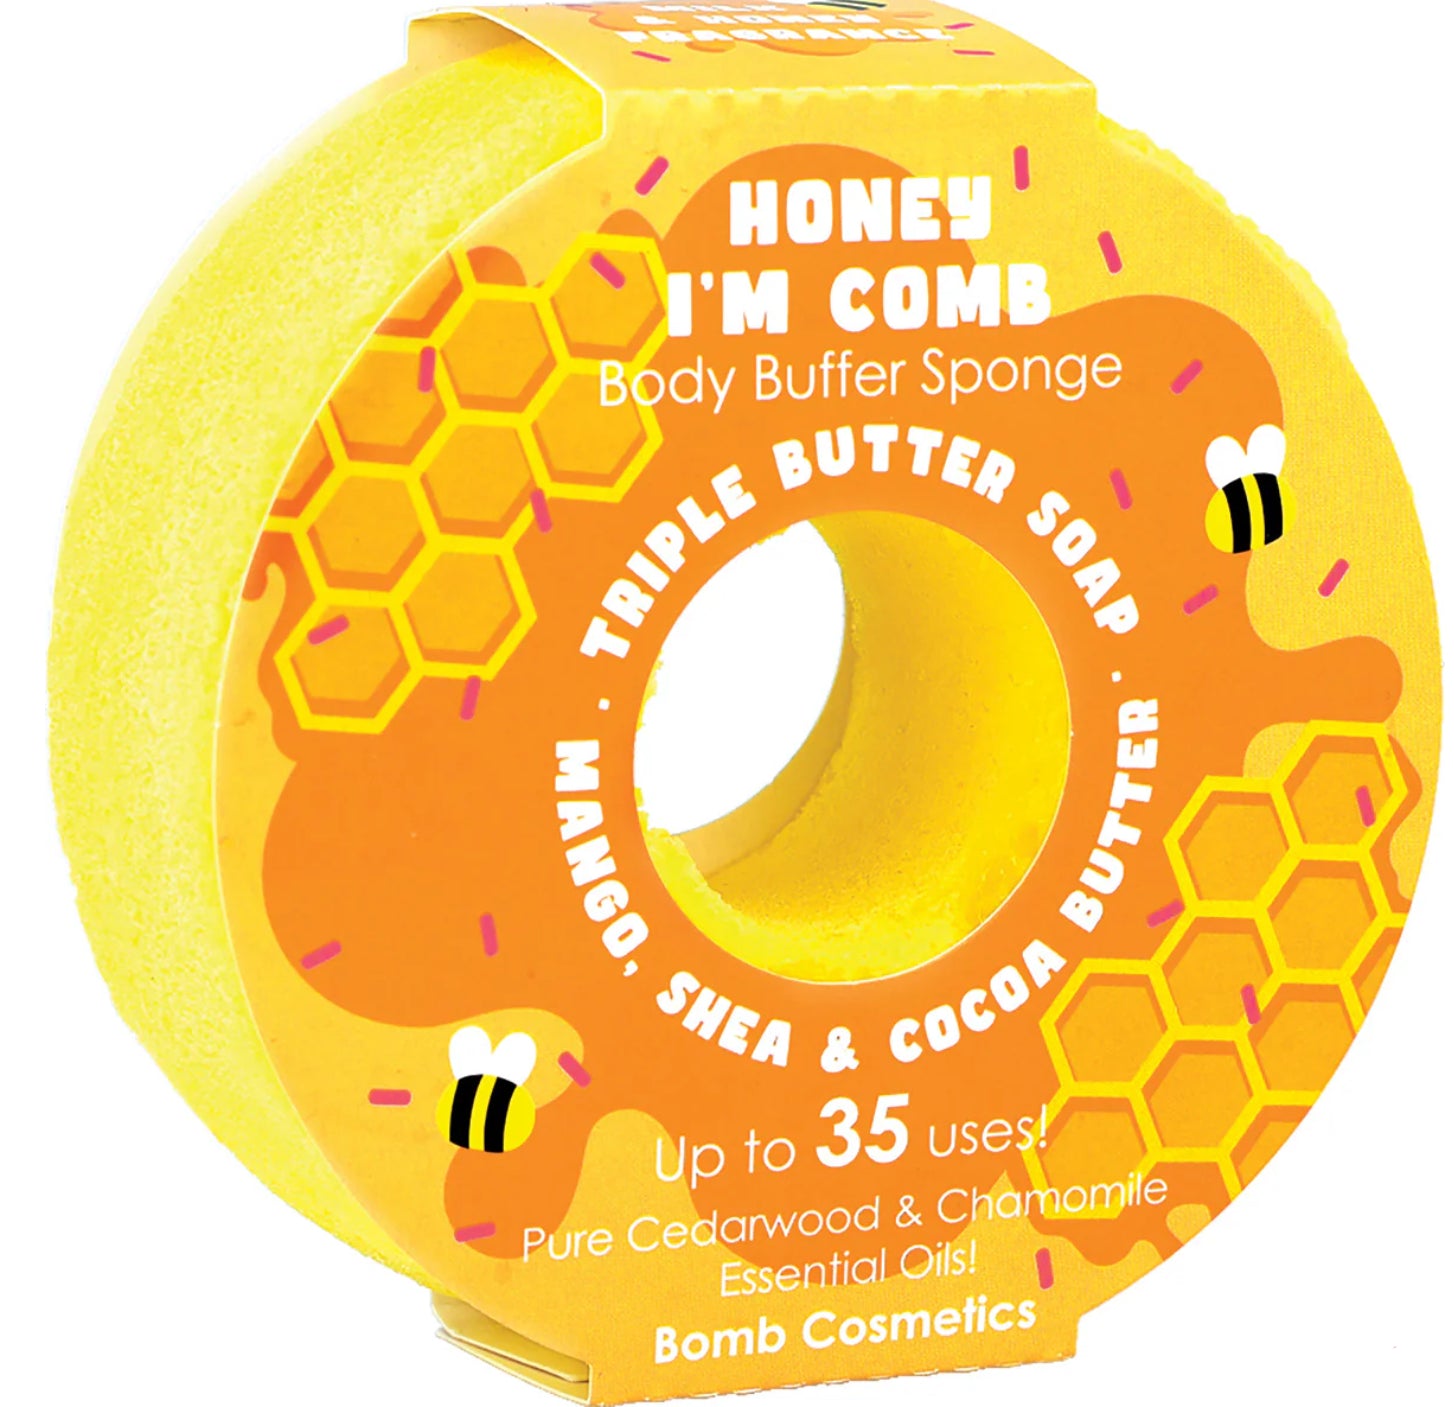 Bomb Cosmetics Body Buffer Sponge Honey I’m Comb